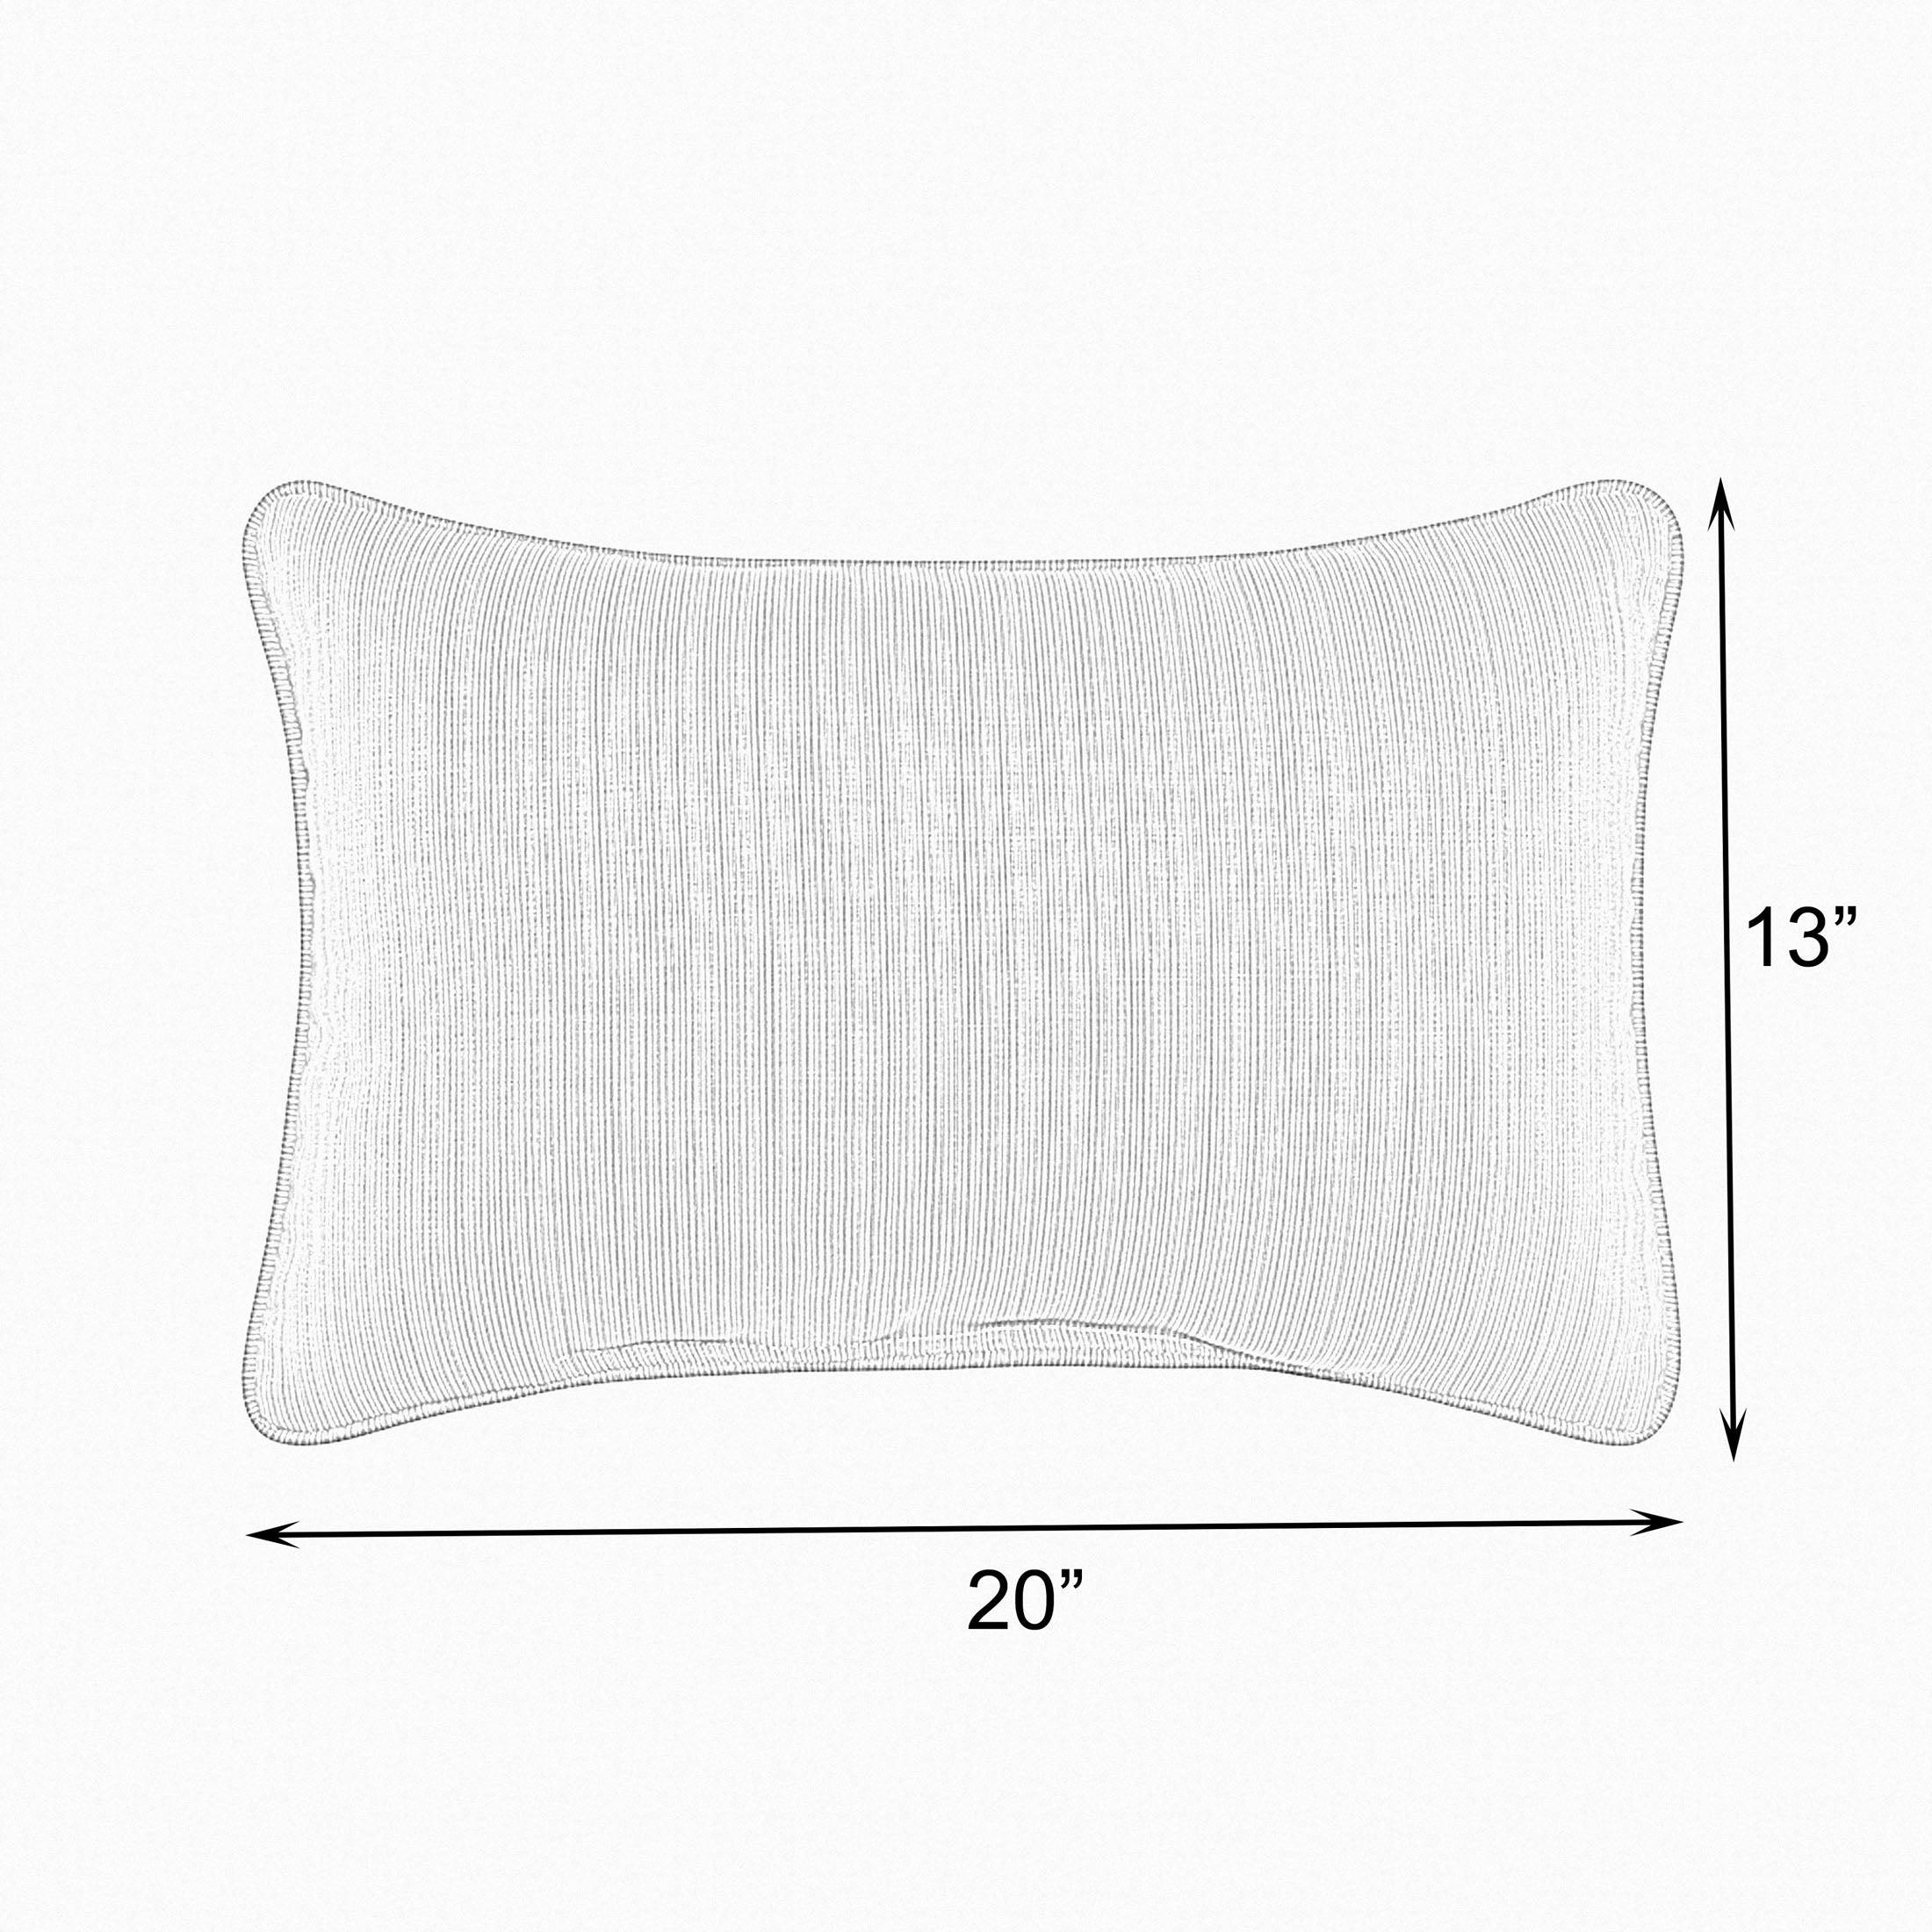 Sunbrella Cabana Lumbar Corded Pillow (Set of 2) - Sorra Home